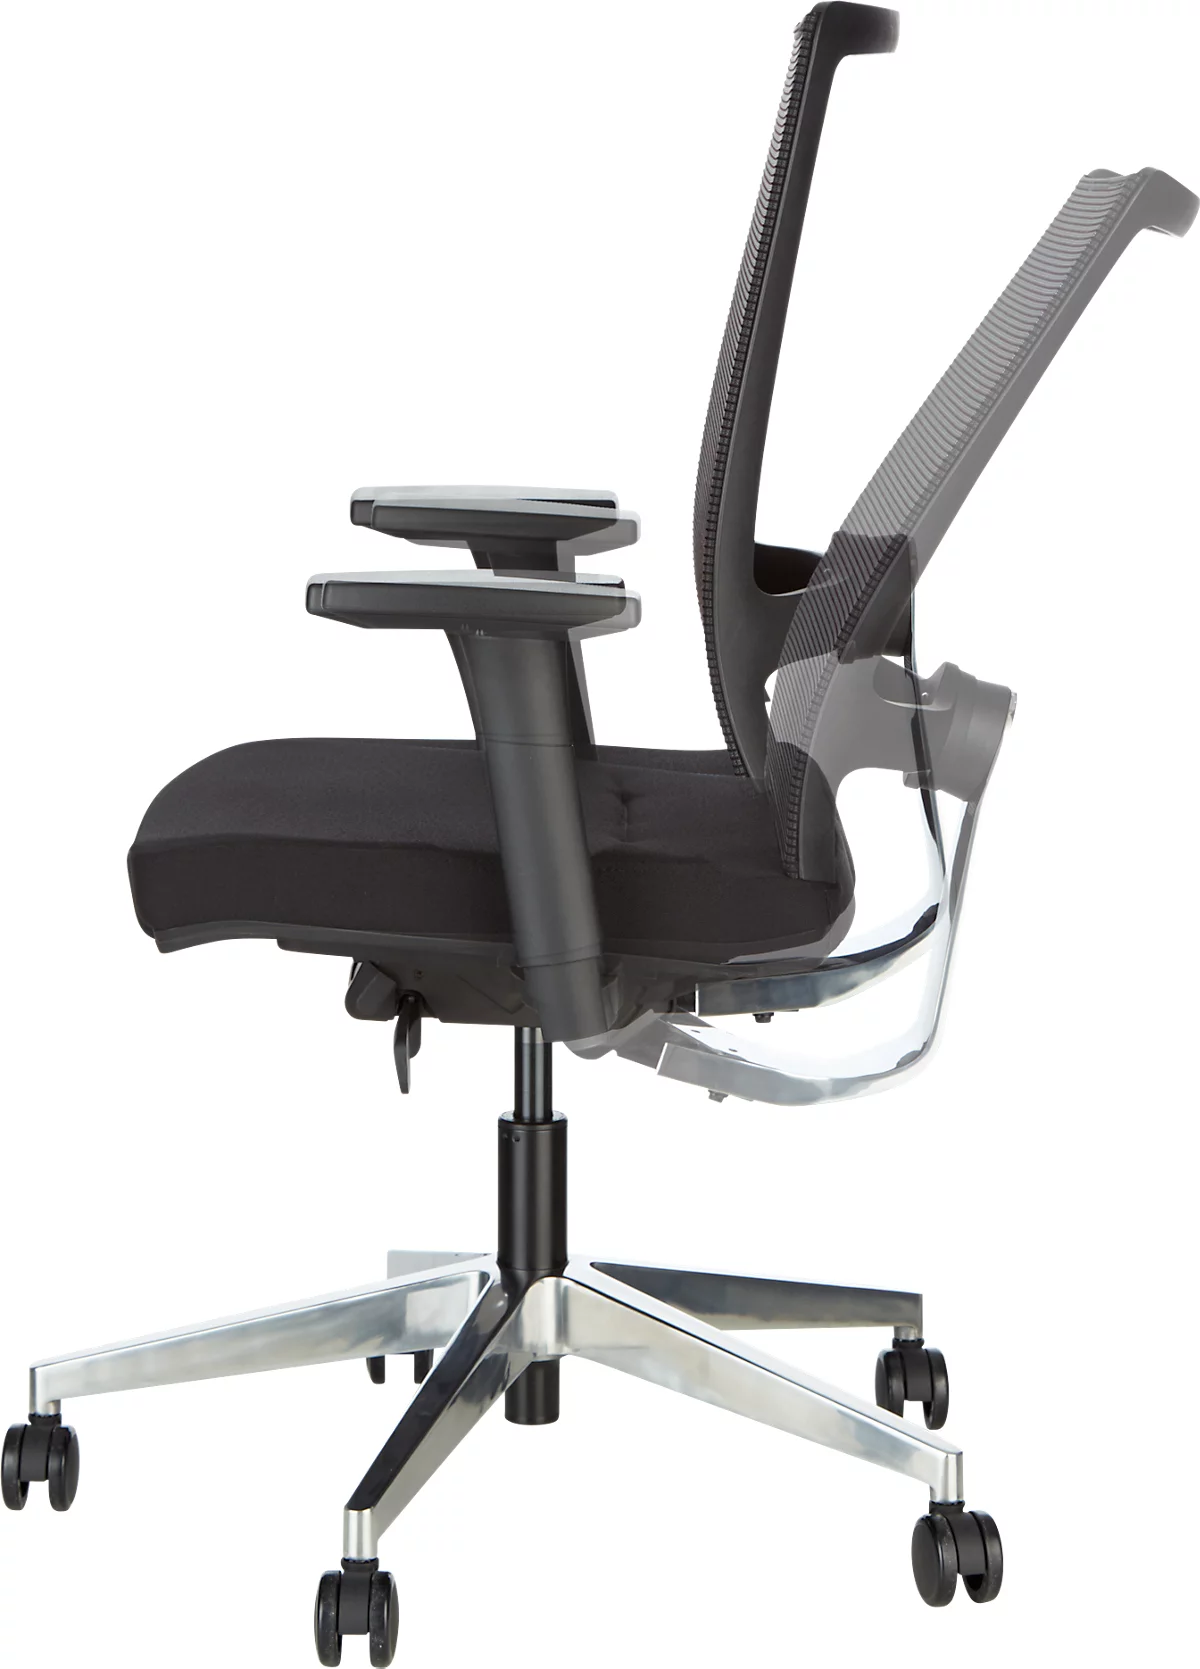 Schäfer Shop Select bureaustoel NET MATIC - stijlvol ontwerp, comfortabel en ideaal voor lange werkdagen